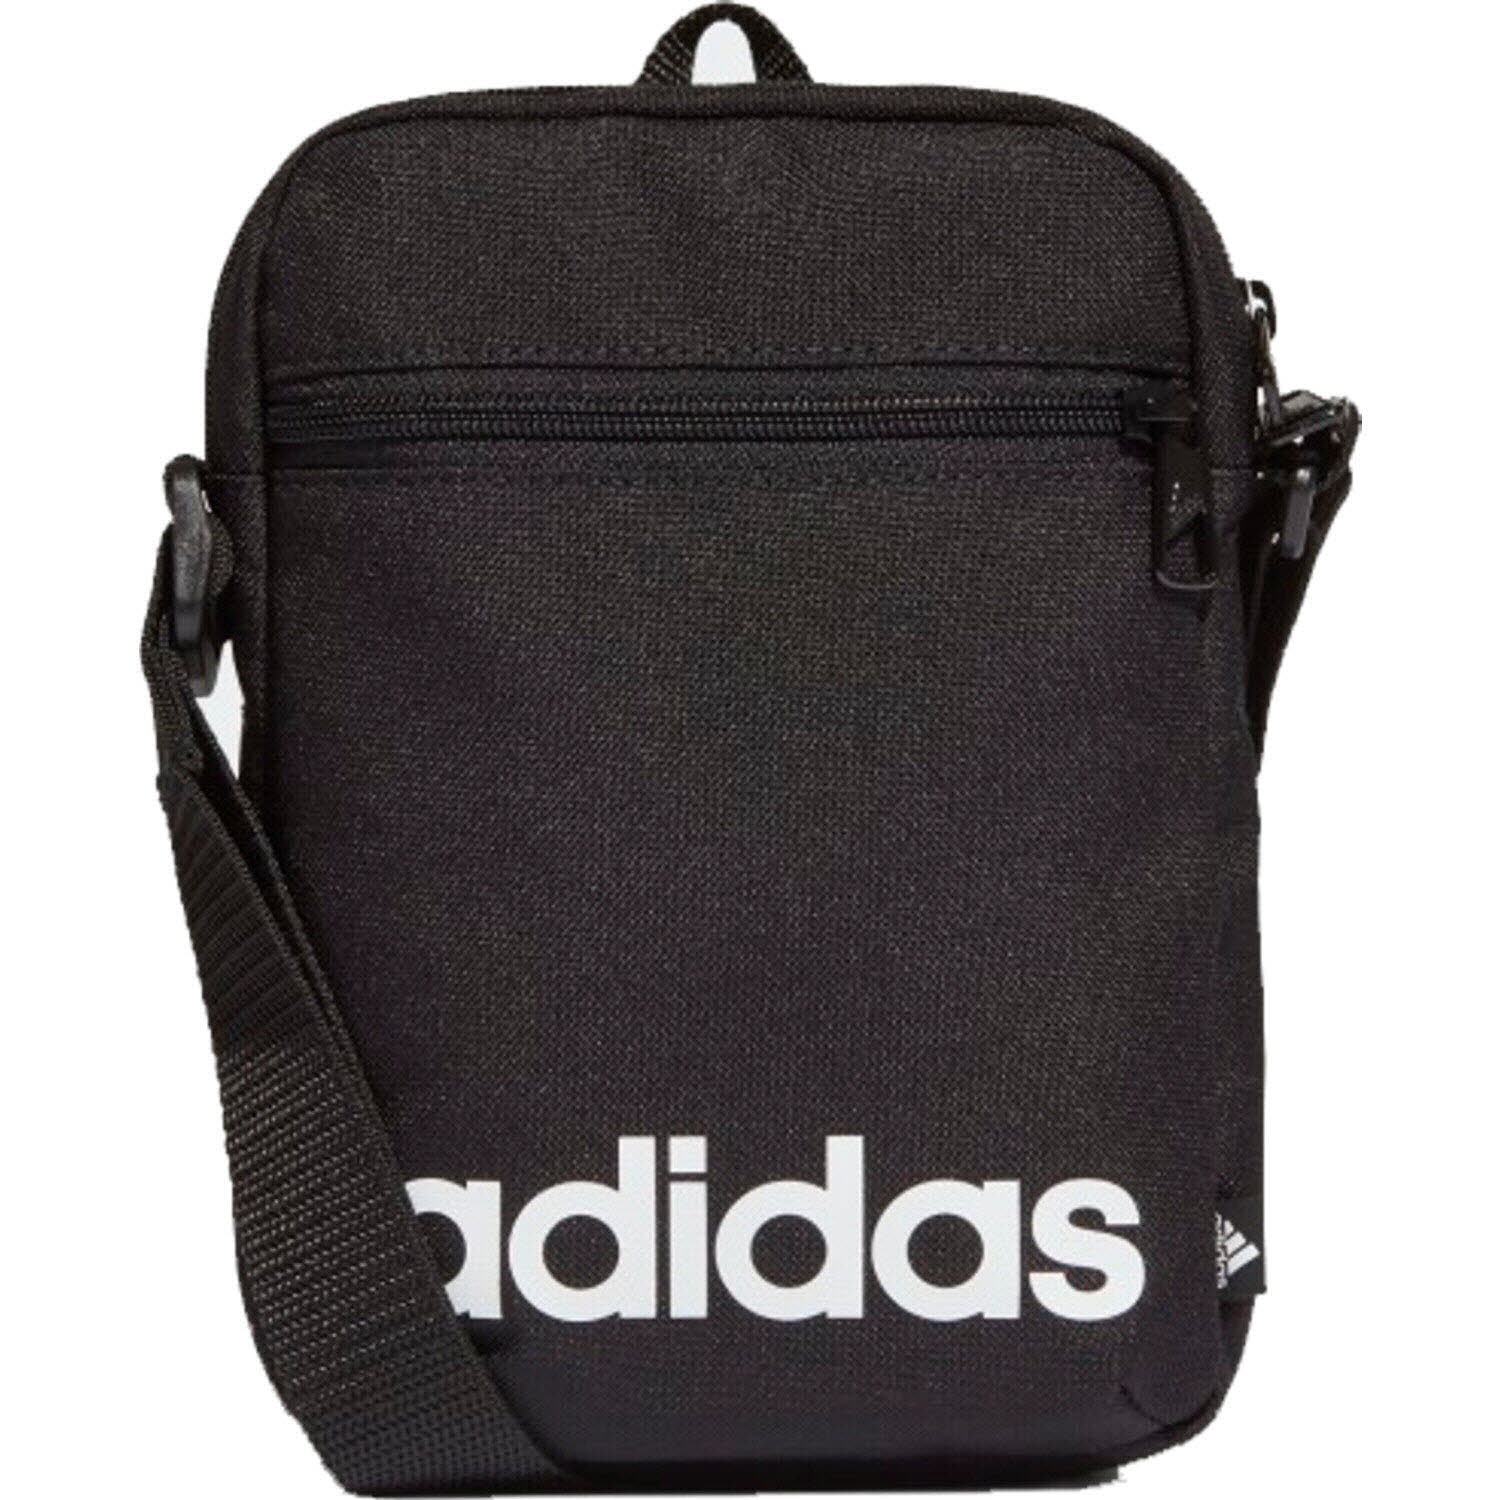 Adidas Organizer Bag Linear Organizer